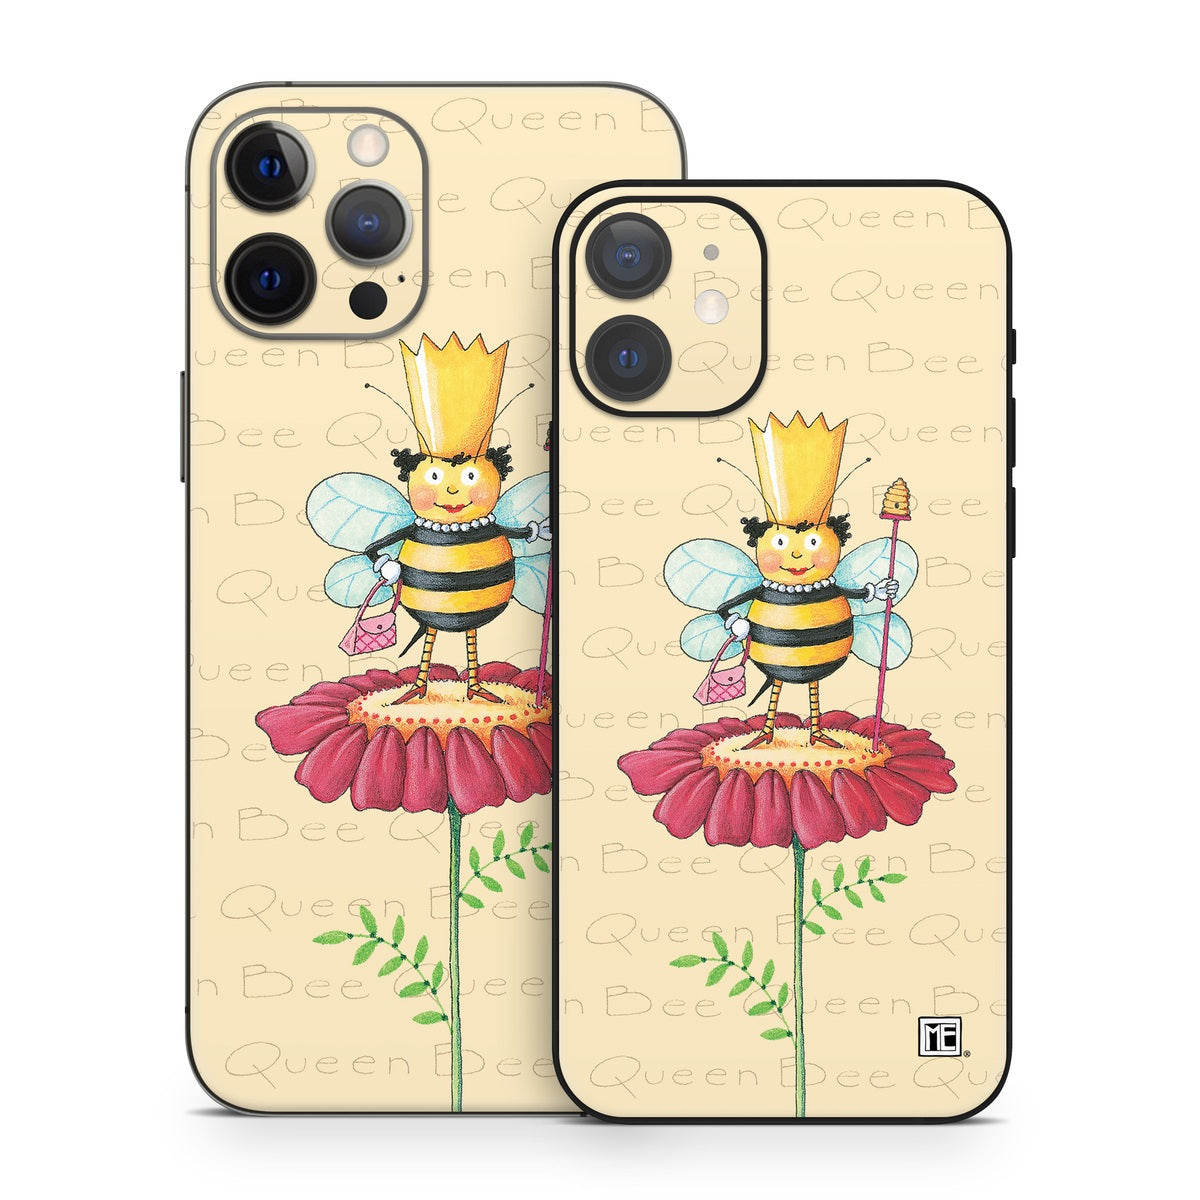 Queen Bee - Apple iPhone 12 Skin